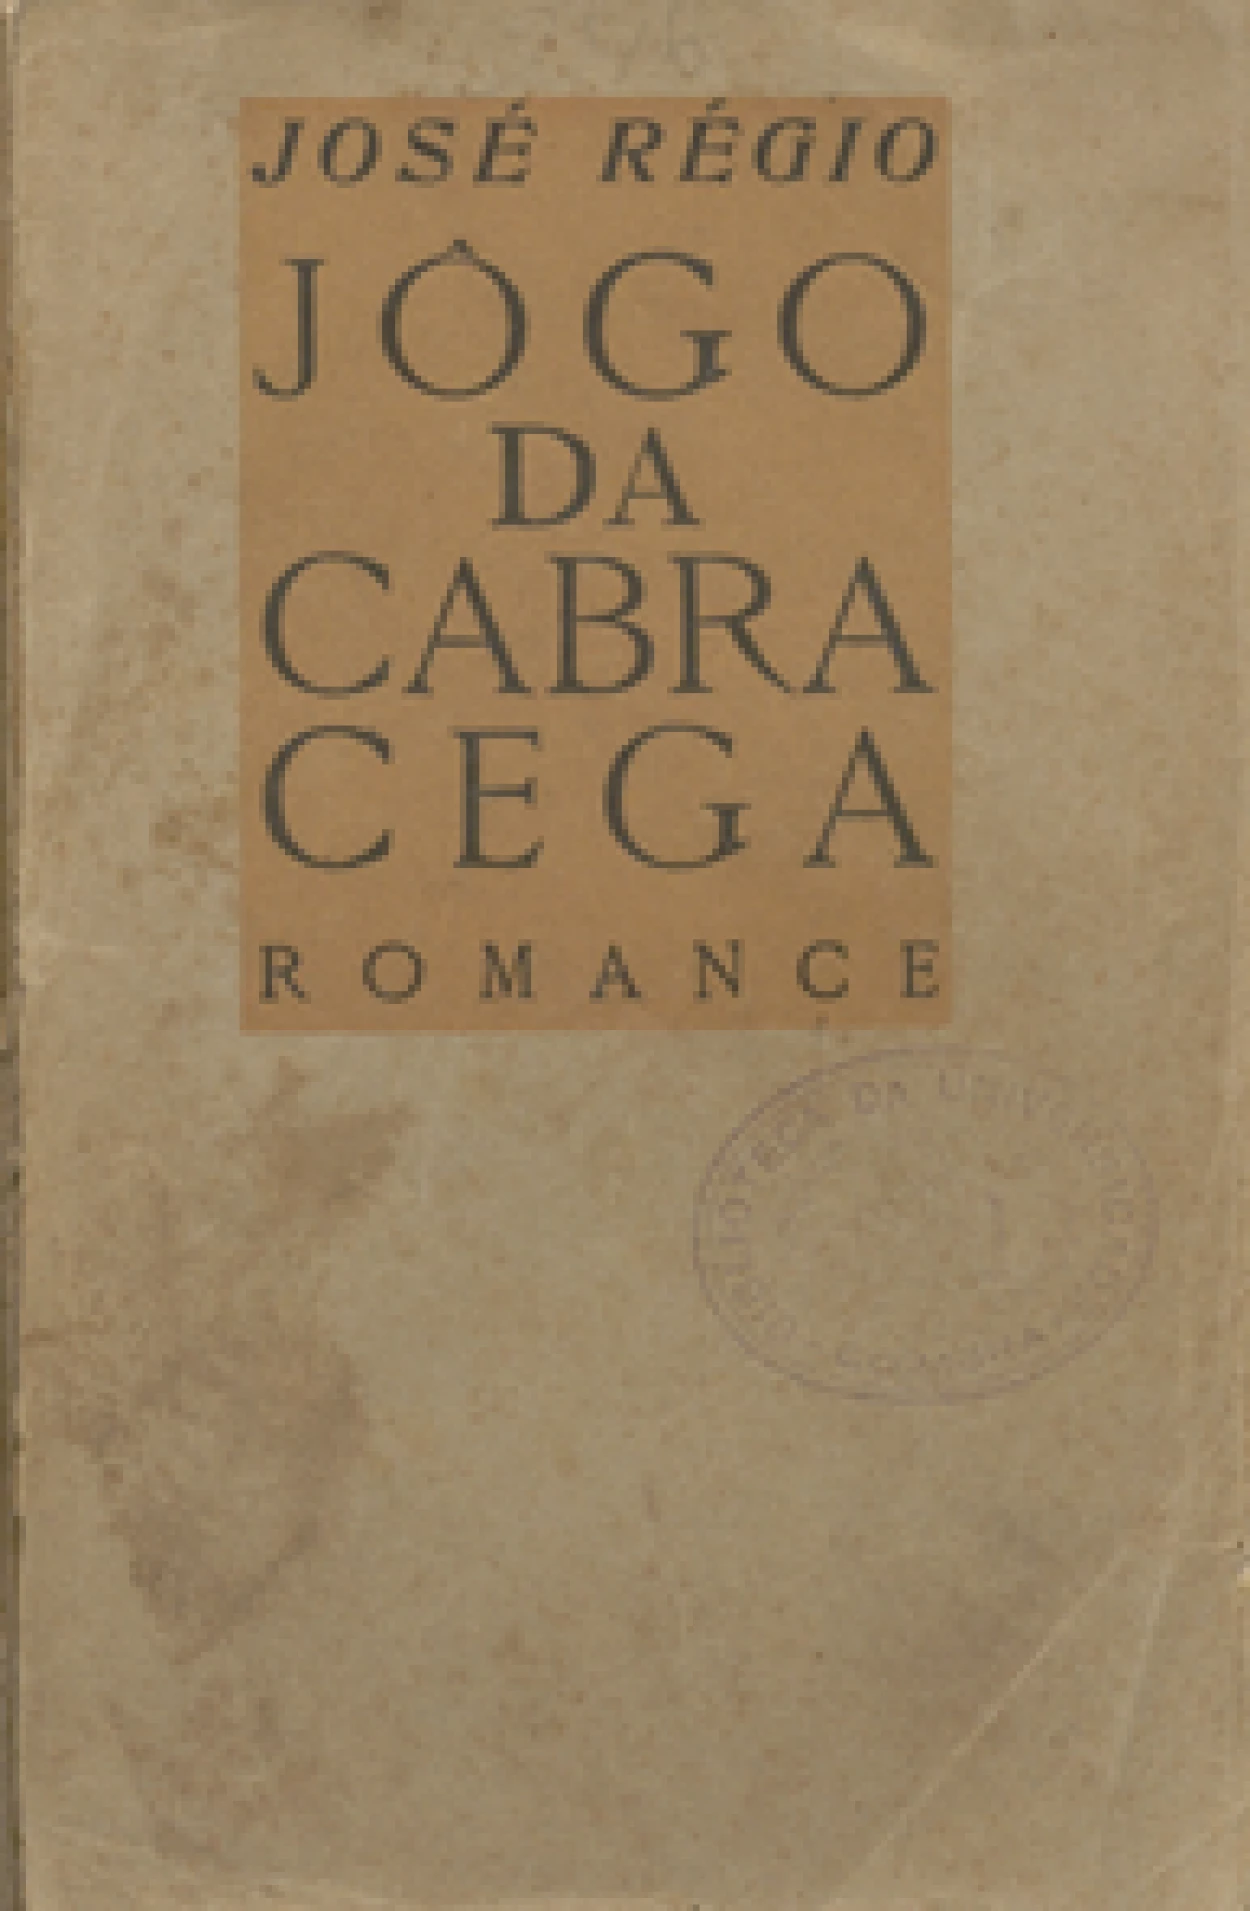 José Régio, pseud.
Jogo da cabra cega : romance.
Coimbra : Edições Presença : Livraria Atlântida, 1934.